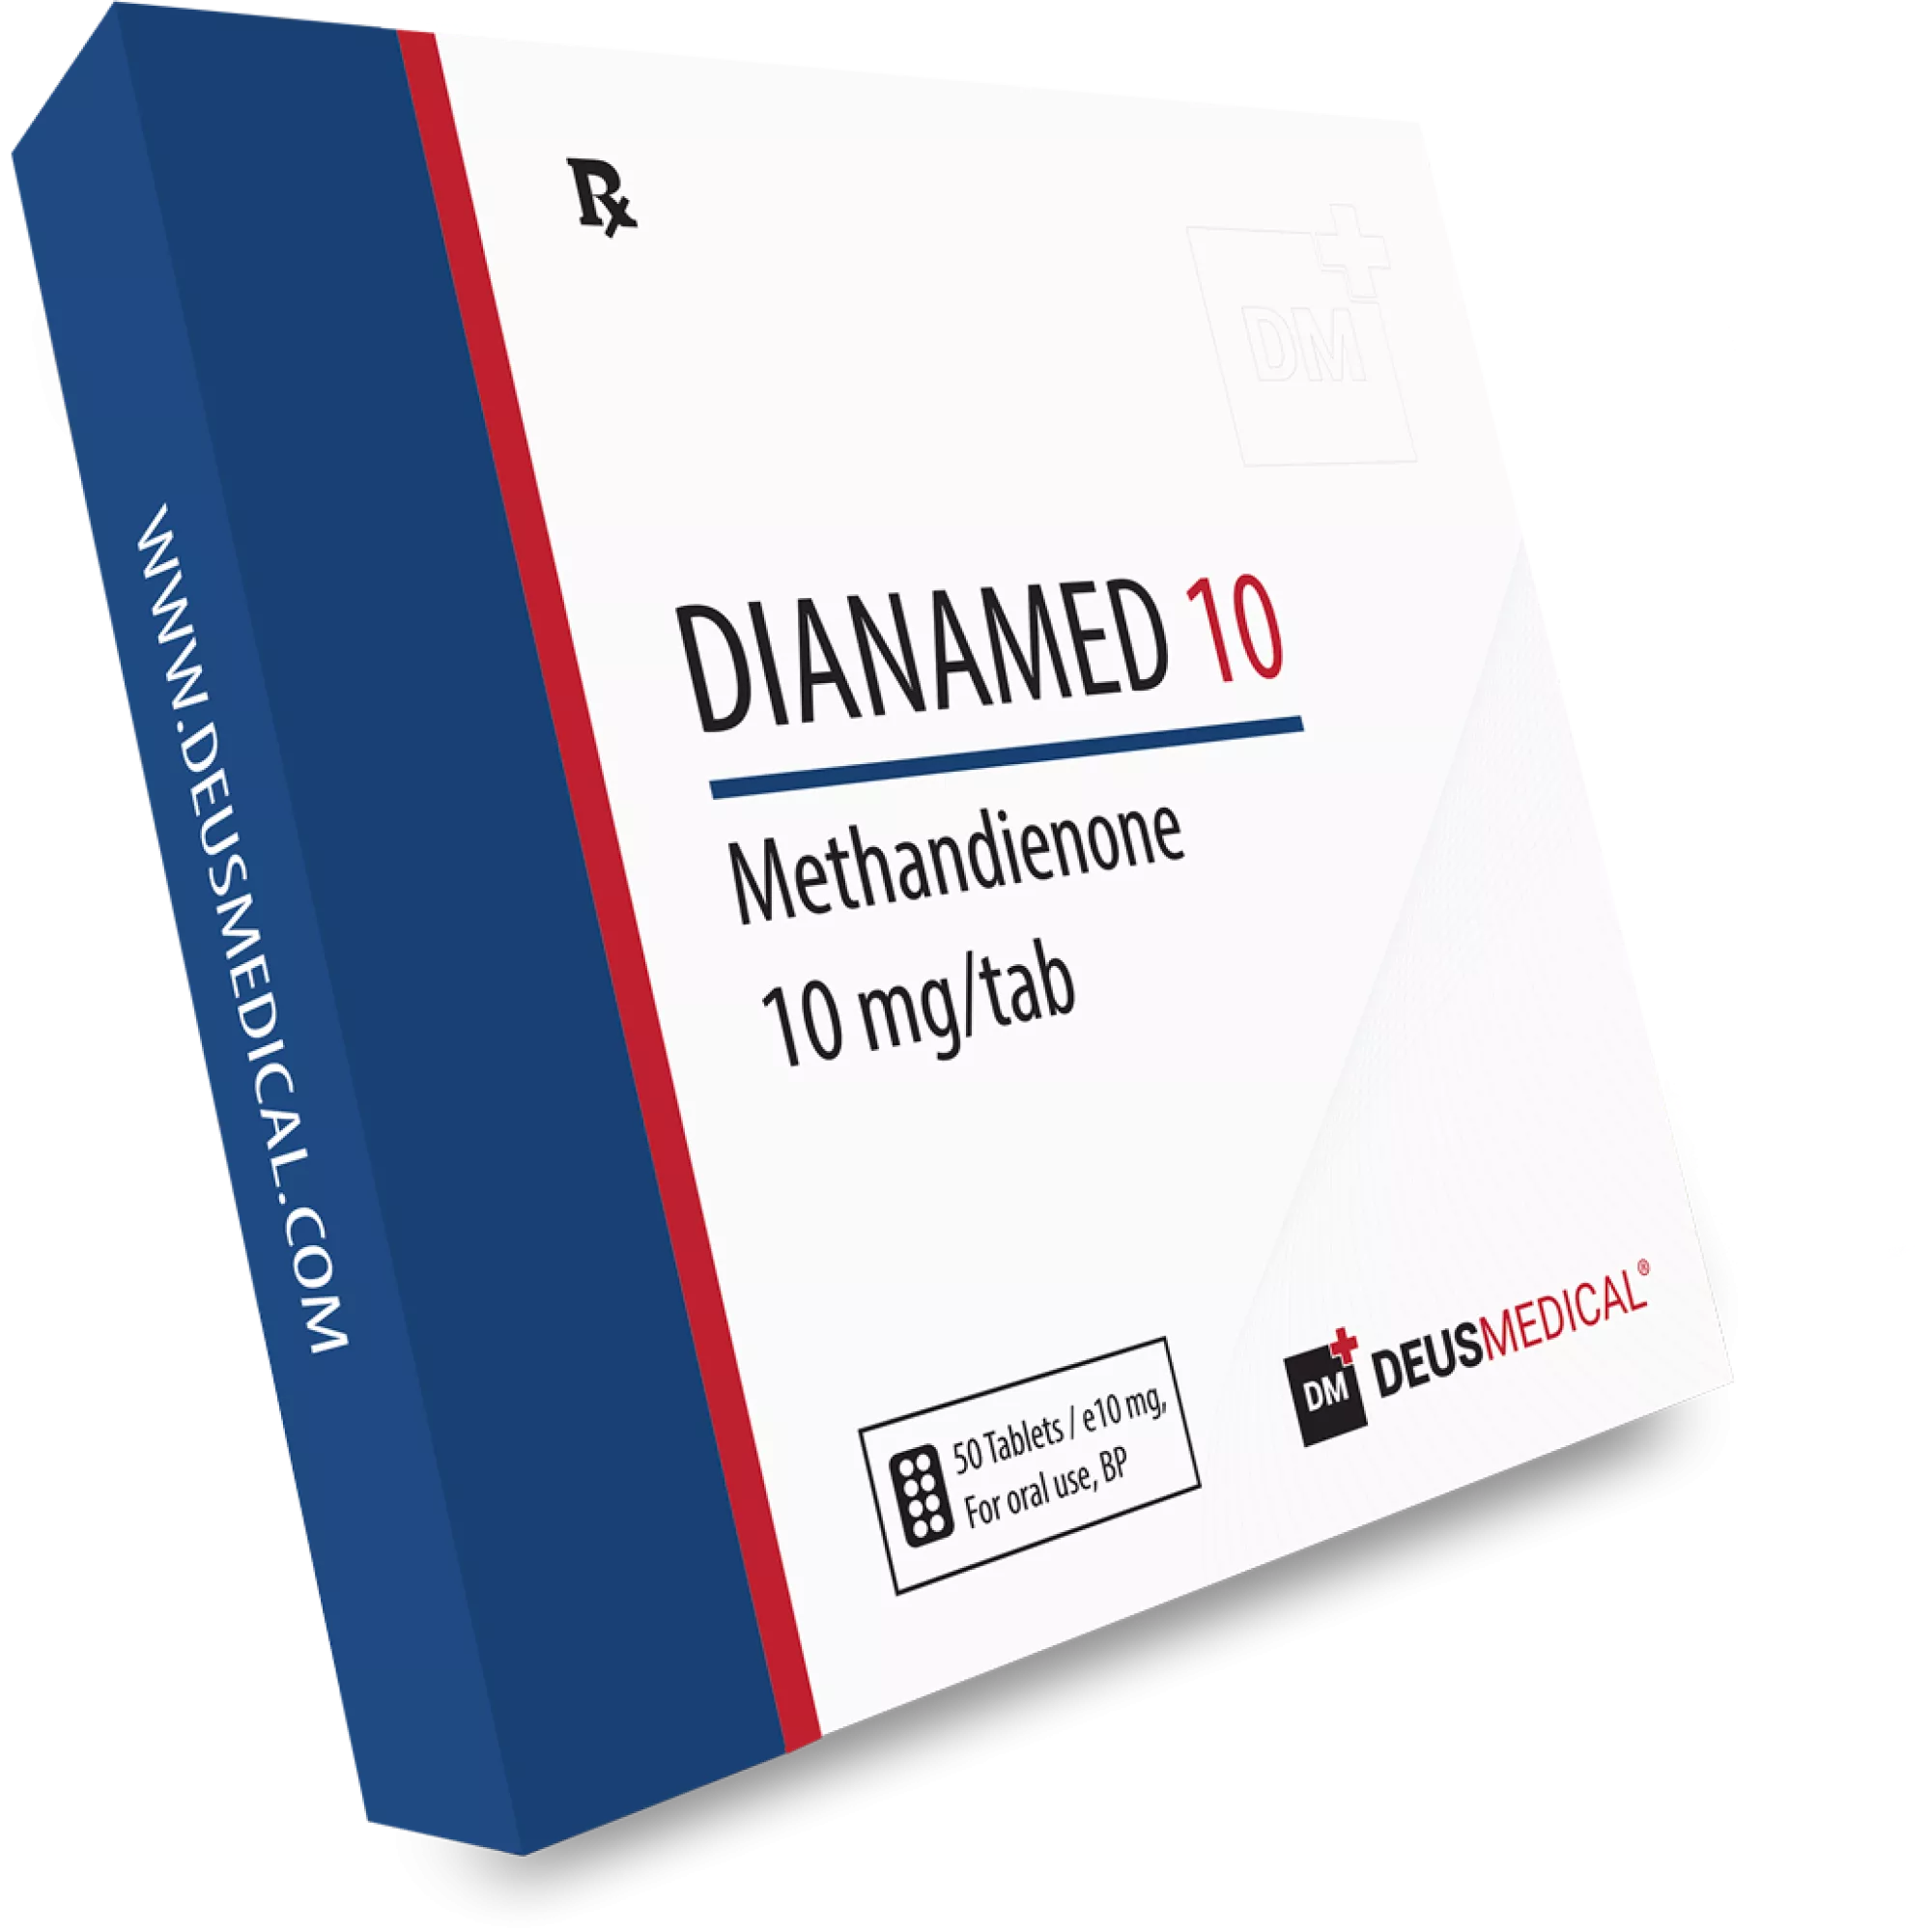 DIANAMED 10 (Methandienone), Deus Medical, Buy Steroids Online - www.deuspower.shop